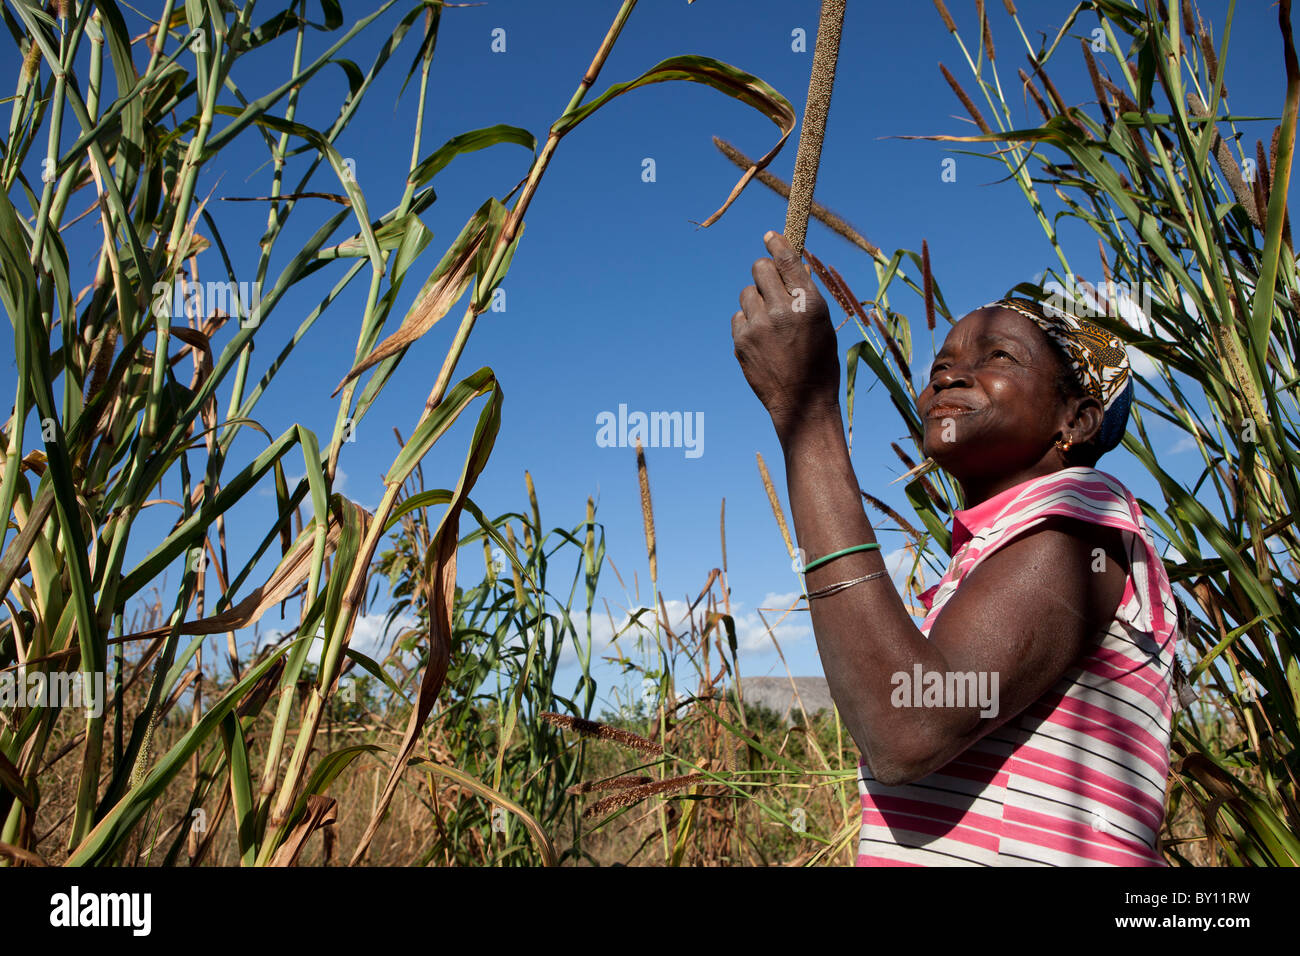 MECEBURI vicino a Nampula, Mozambico, Maggio 2010: Adrina Veleke, un agricoltore e madre single, con il suo raccolto di miglio accanto alla sua casa. Foto Stock